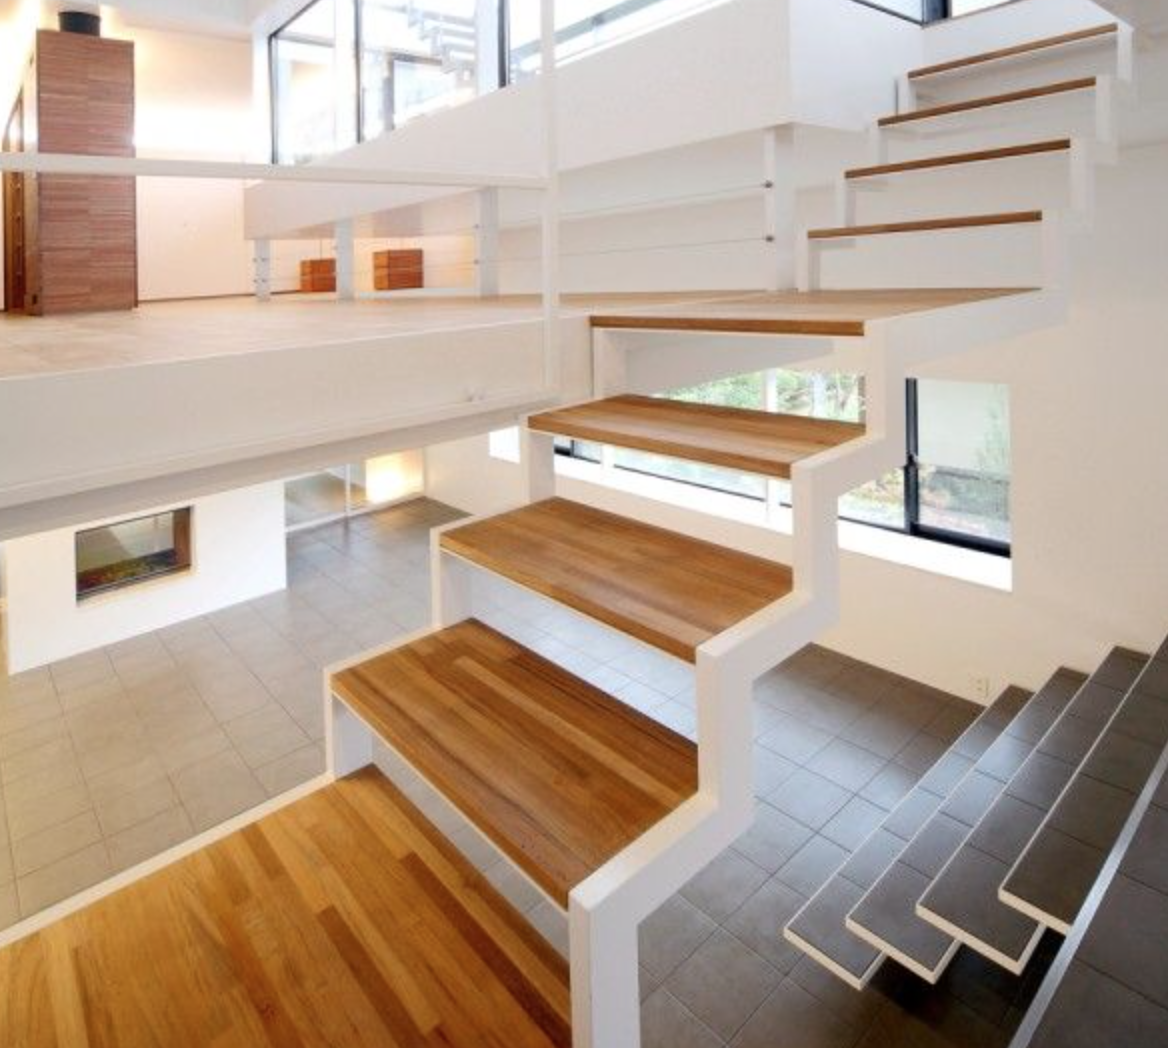 Vorgartengestaltung Inspirierend Freie Treppe Weiß Stahl Randgerüst Holz Elemente